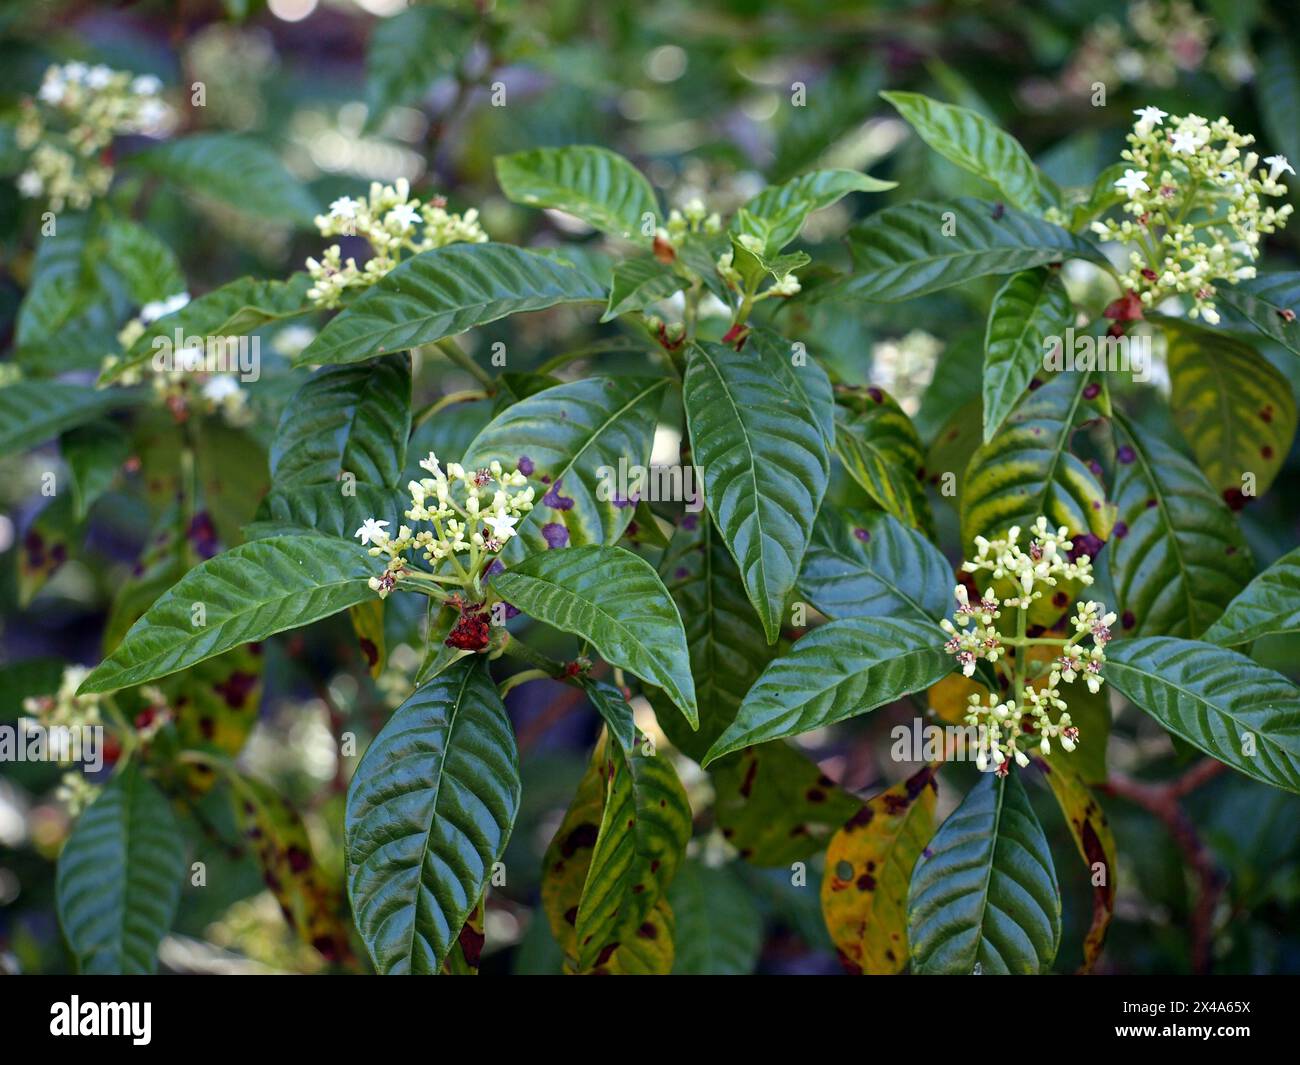 Fiori di caffè selvatico o Seminole balsamo (Psychotria nervosa), pianta originaria della Florida, dell'America centrale e meridionale. Foto Stock